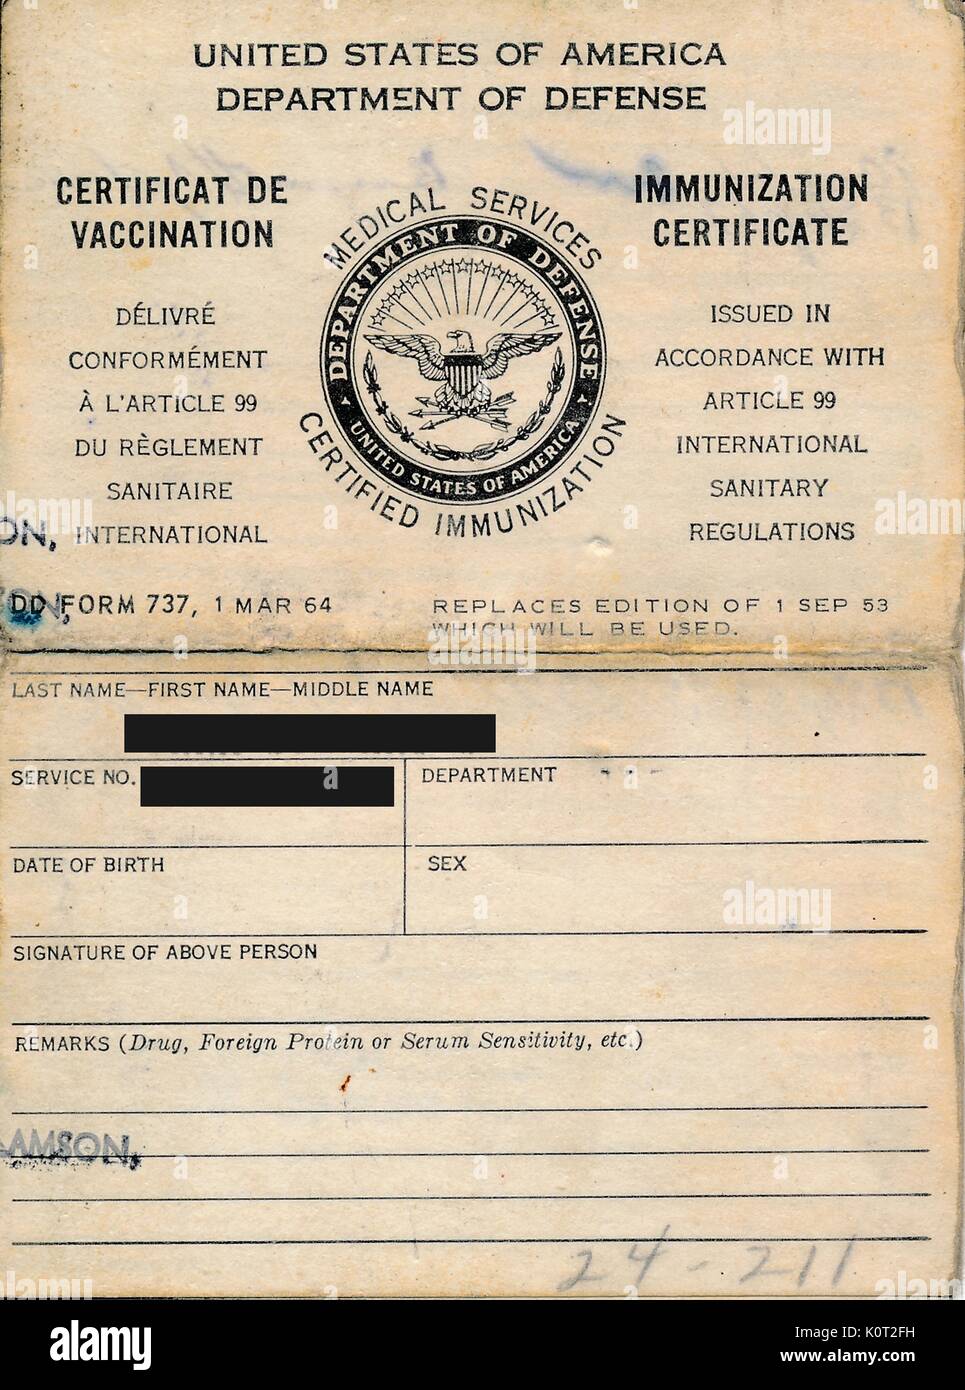 United States Department of Defense, Medizinische dienste Immunisierung Zertifikat, in dem der Name und die Identität eines Soldaten, die geimpft wurde vor in Vietnam während des Vietnam Krieges (Identität des Soldaten anonymisiert auf digitalen Artefakt Privatsphäre zu schützen), 1964 stationiert zu werden. Stockfoto